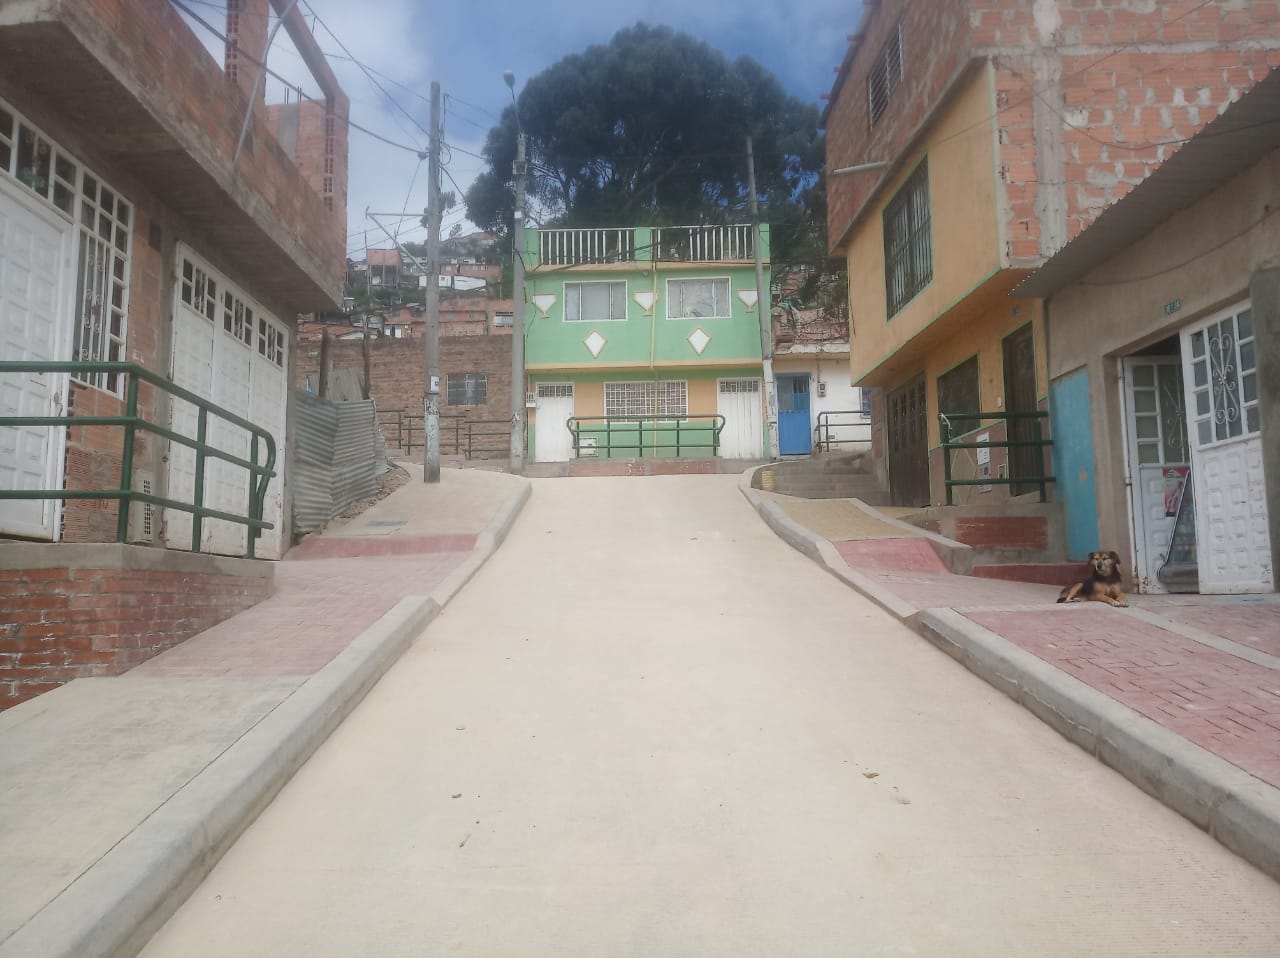 obras ejecutadas por la Alcaldía de Bogotá en el barrio Arabia, Sector Tesorito, en Ciudad Bolívar.